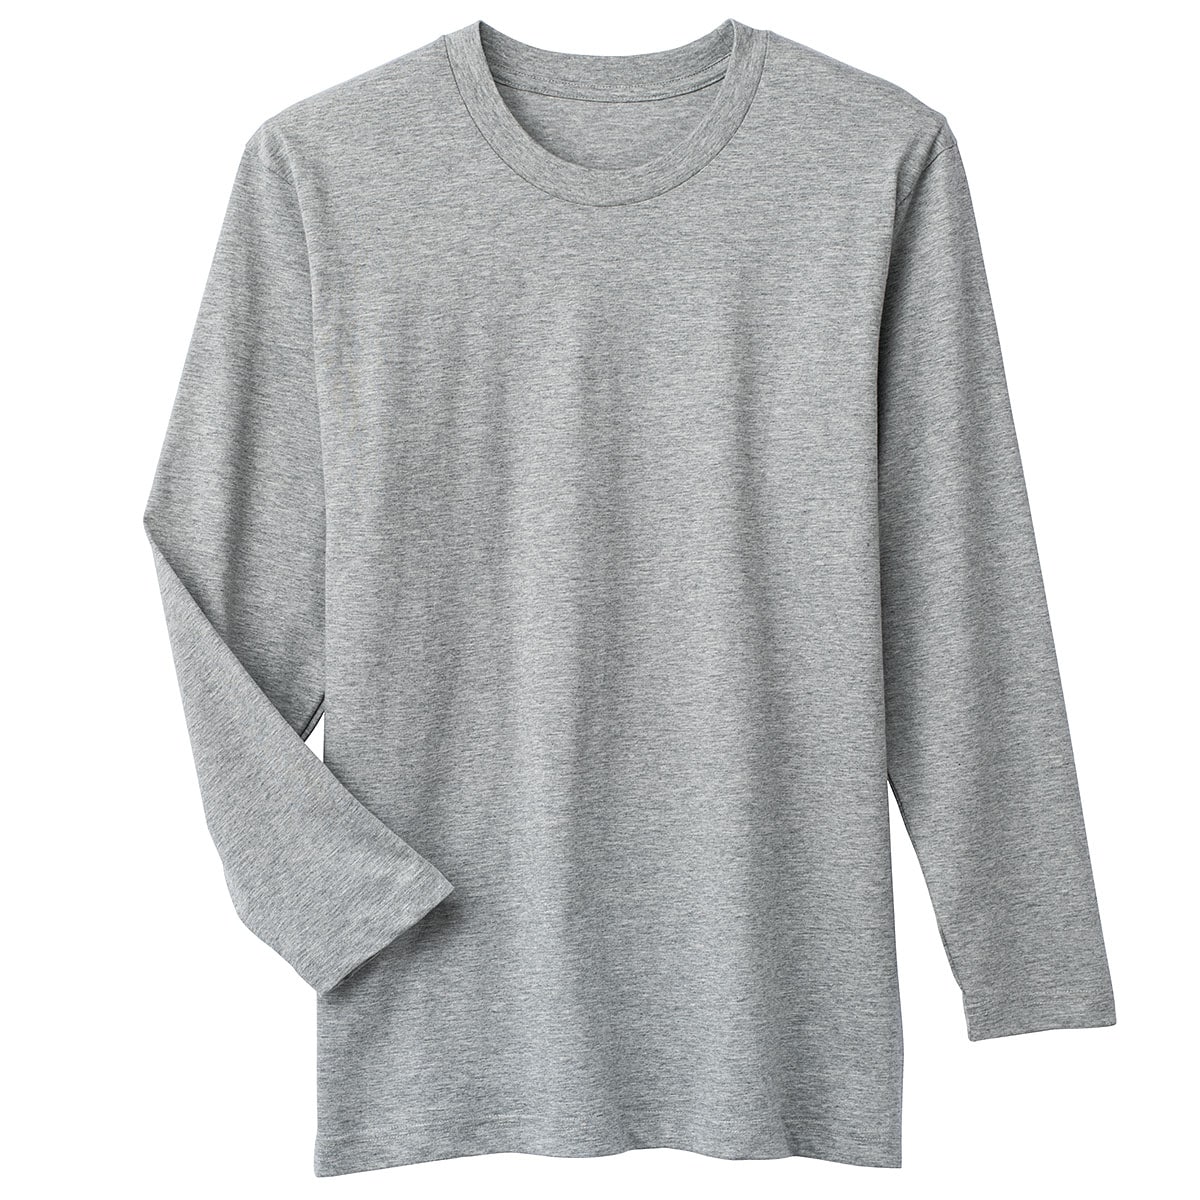 同色2枚組 男の綿100%クルーネックTシャツ(長袖) ファッション通販ならセシール(cecile)